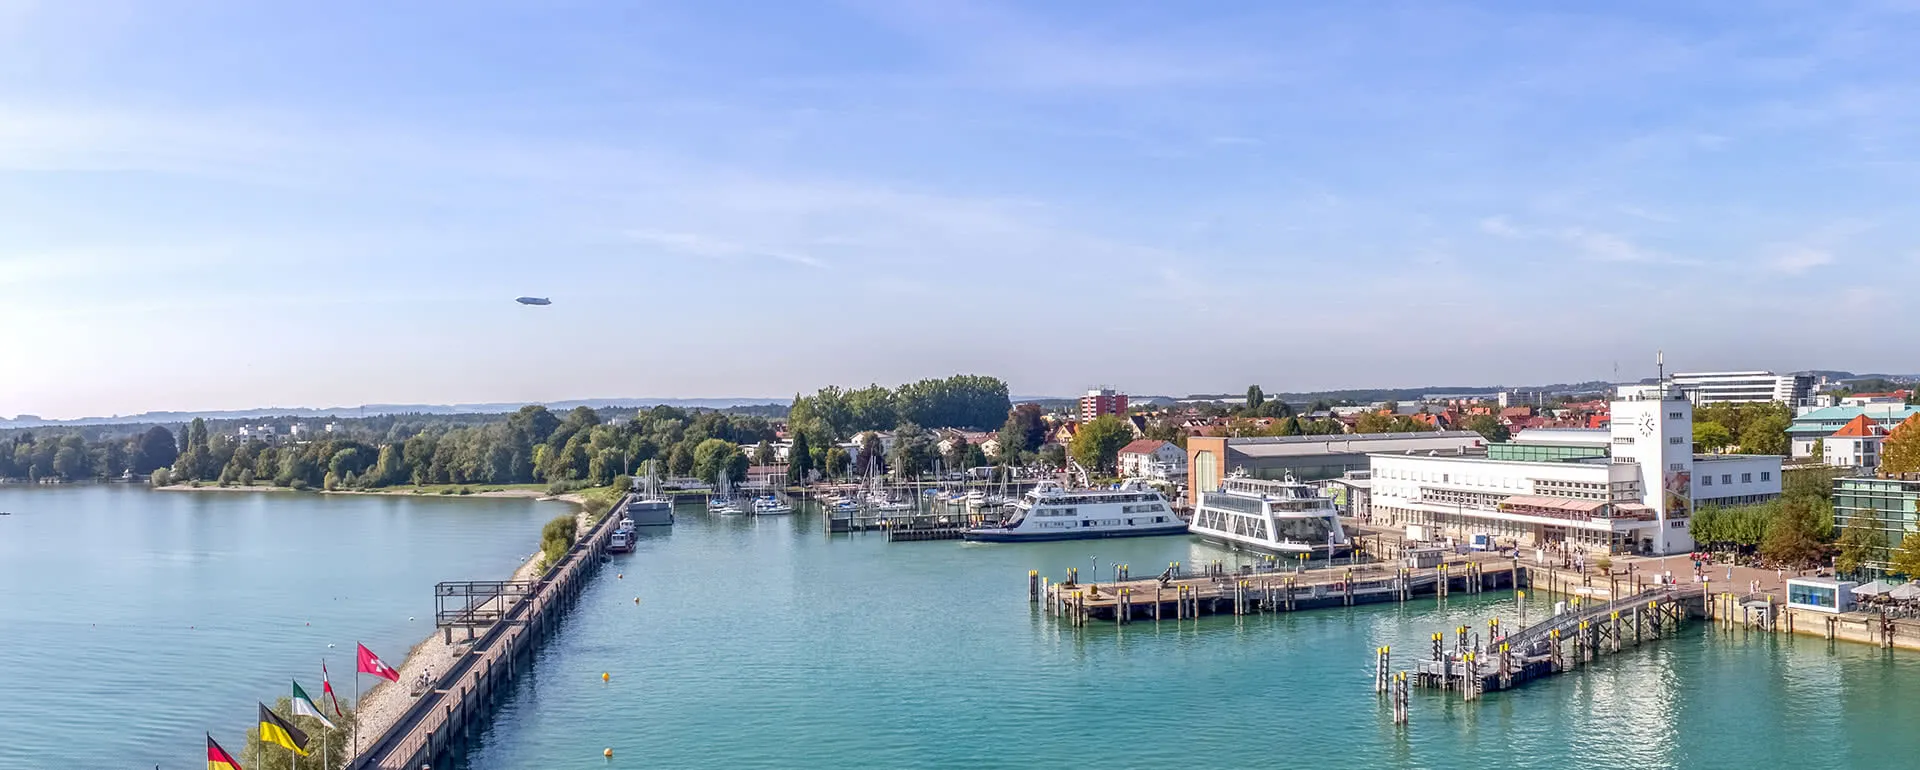 Friedrichshafen - the destination with youth hostels